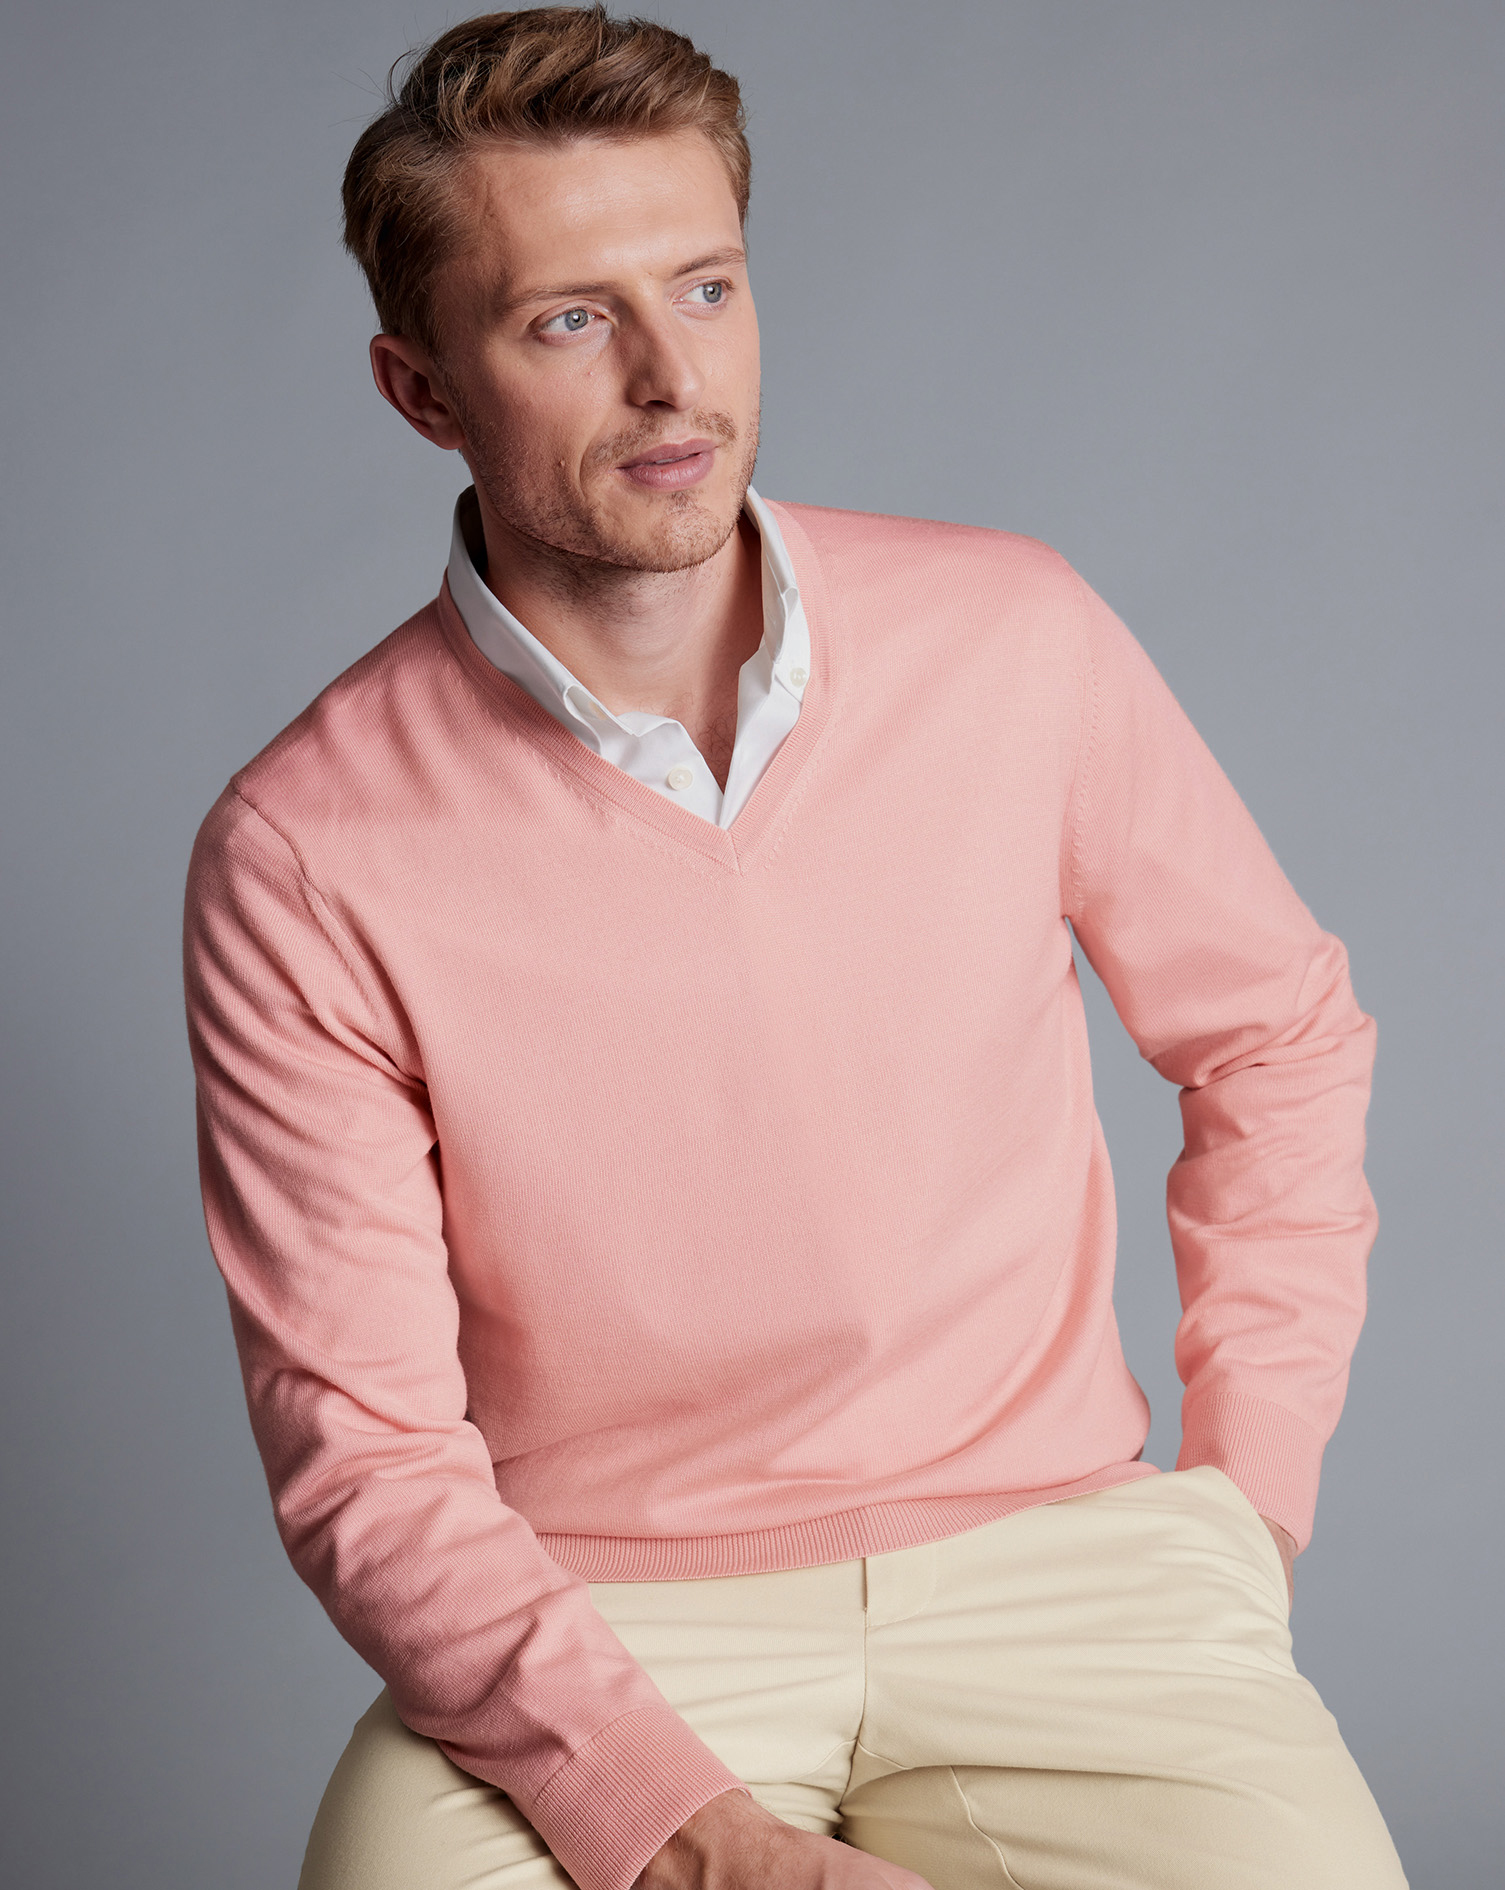 Men's Charles Tyrwhitt Merino V-Neck Sweater - Light Coral Pink Size Medium Wool
